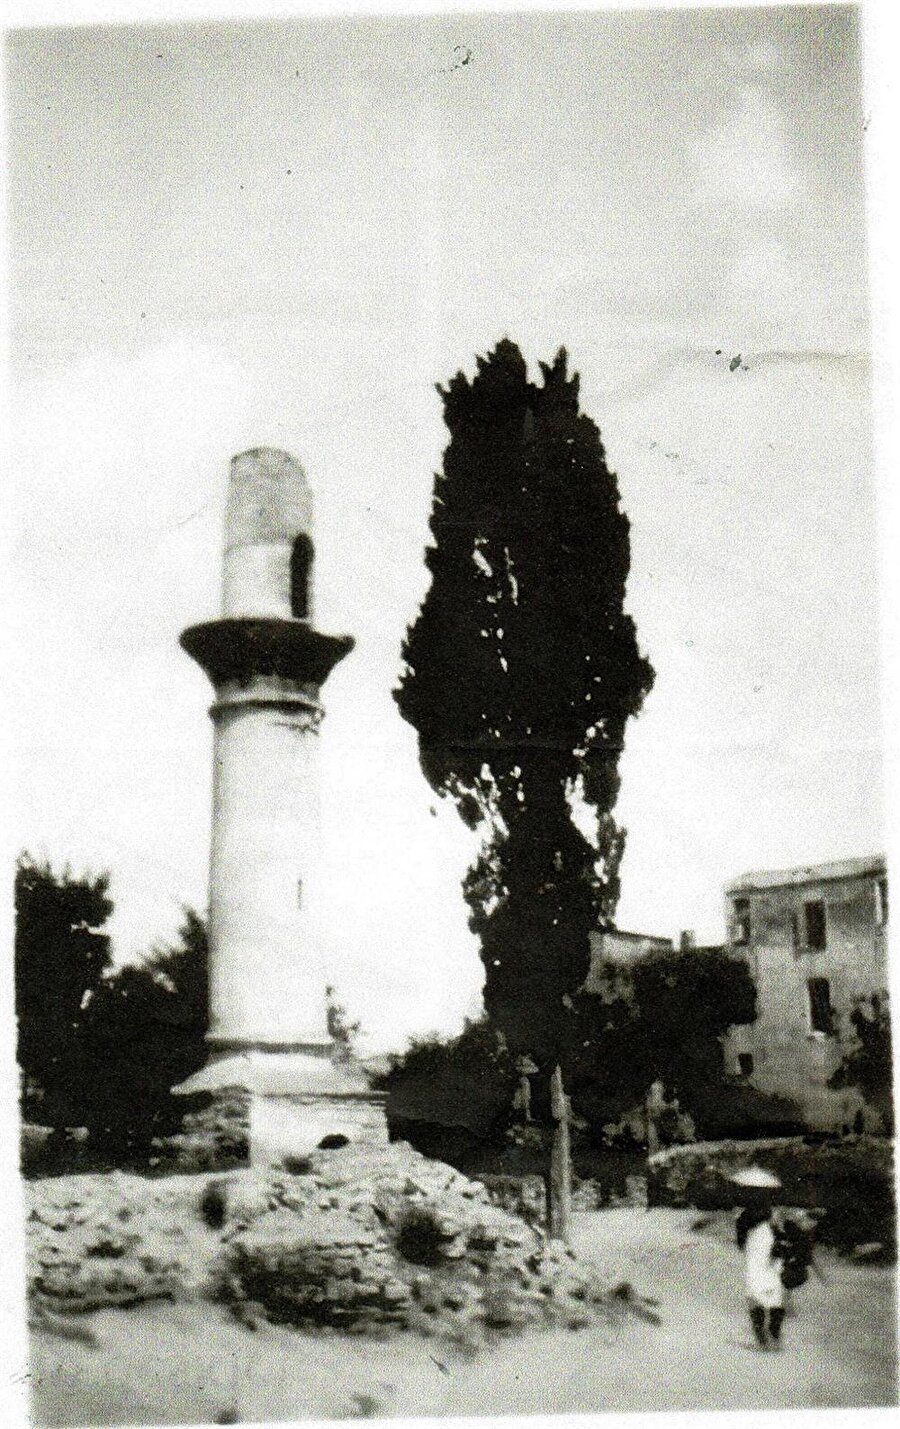 Hamami Hatun Camii

                                    
                                    
                                    Hamami Hatun Camii İstanbul'un Samatya semtinde inşa edilmiş, Fatma Hatun tarafından Mimar Sinan'a yaptırılan eser 1933 yılında yıkılmıştır.
                                
                                
                                